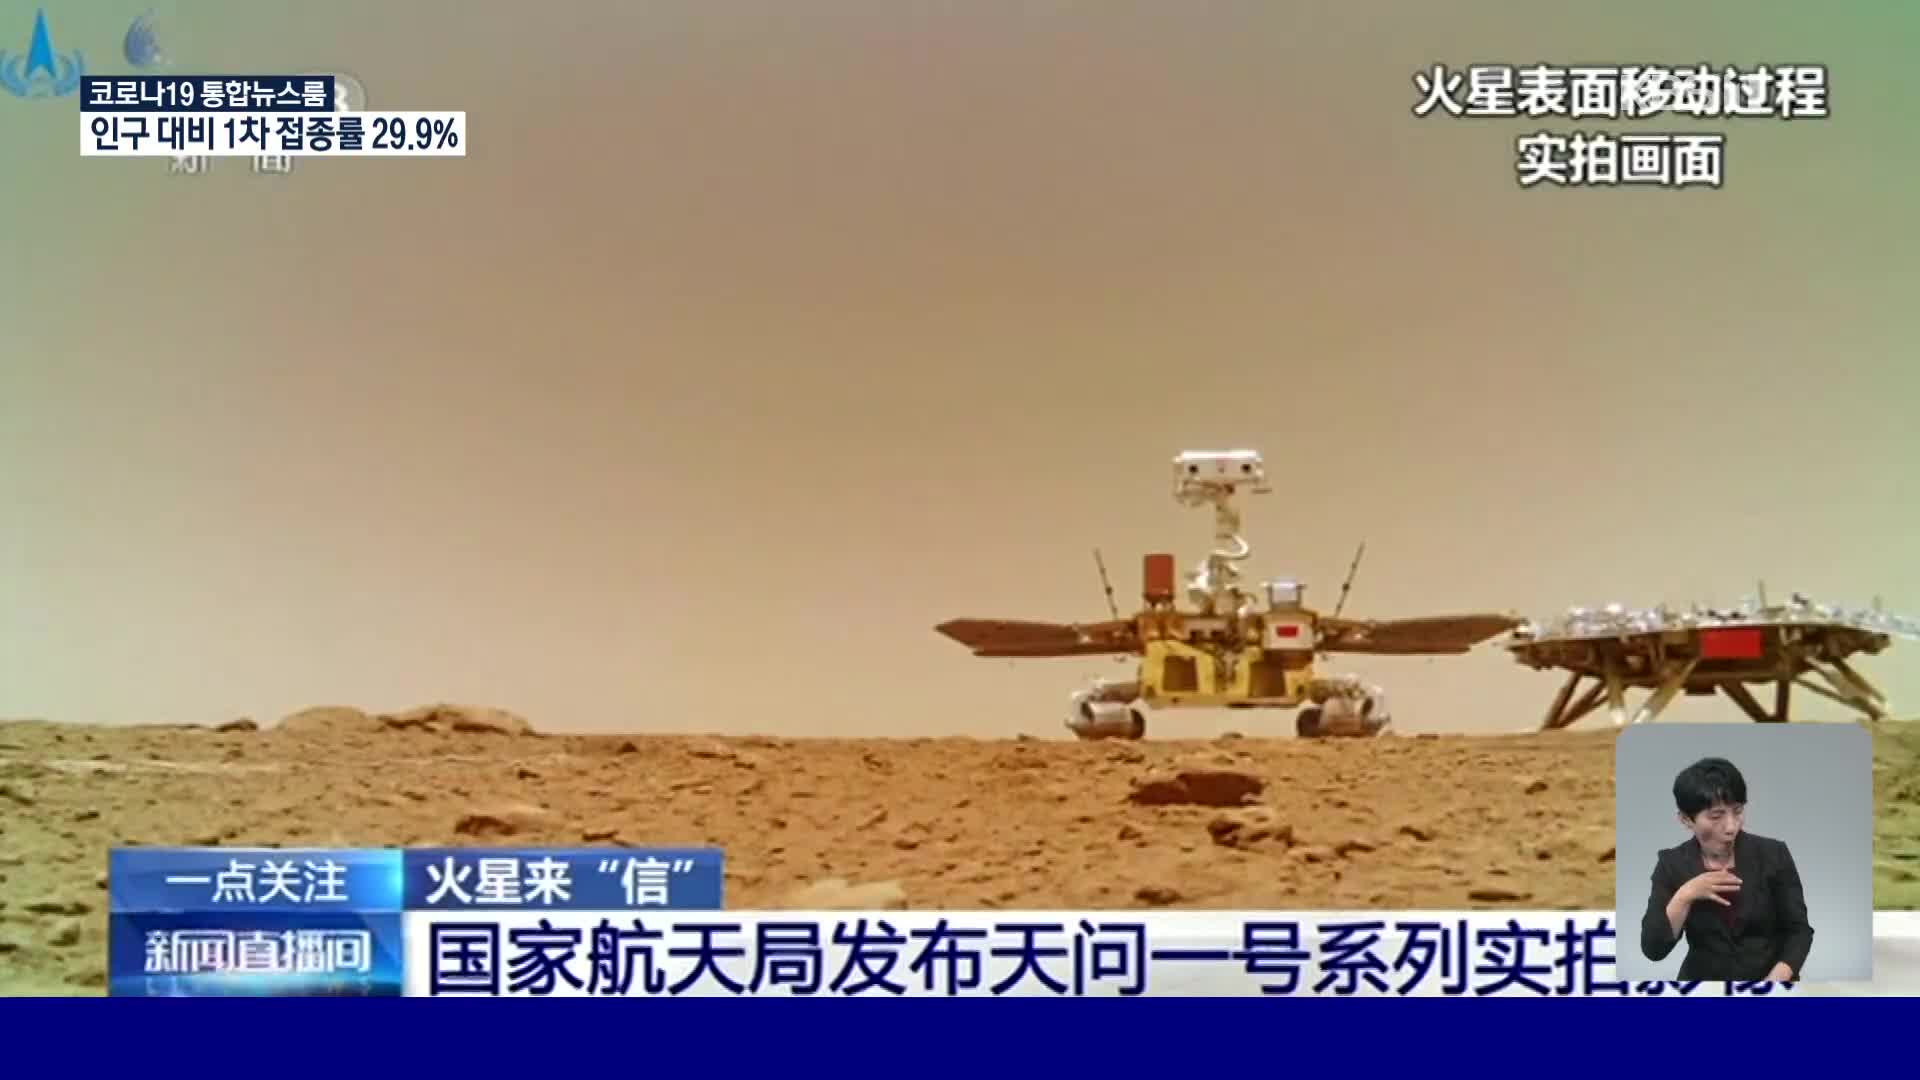 中, 화성 탐사 차량 ‘주룽호’ 활동 영상 공개